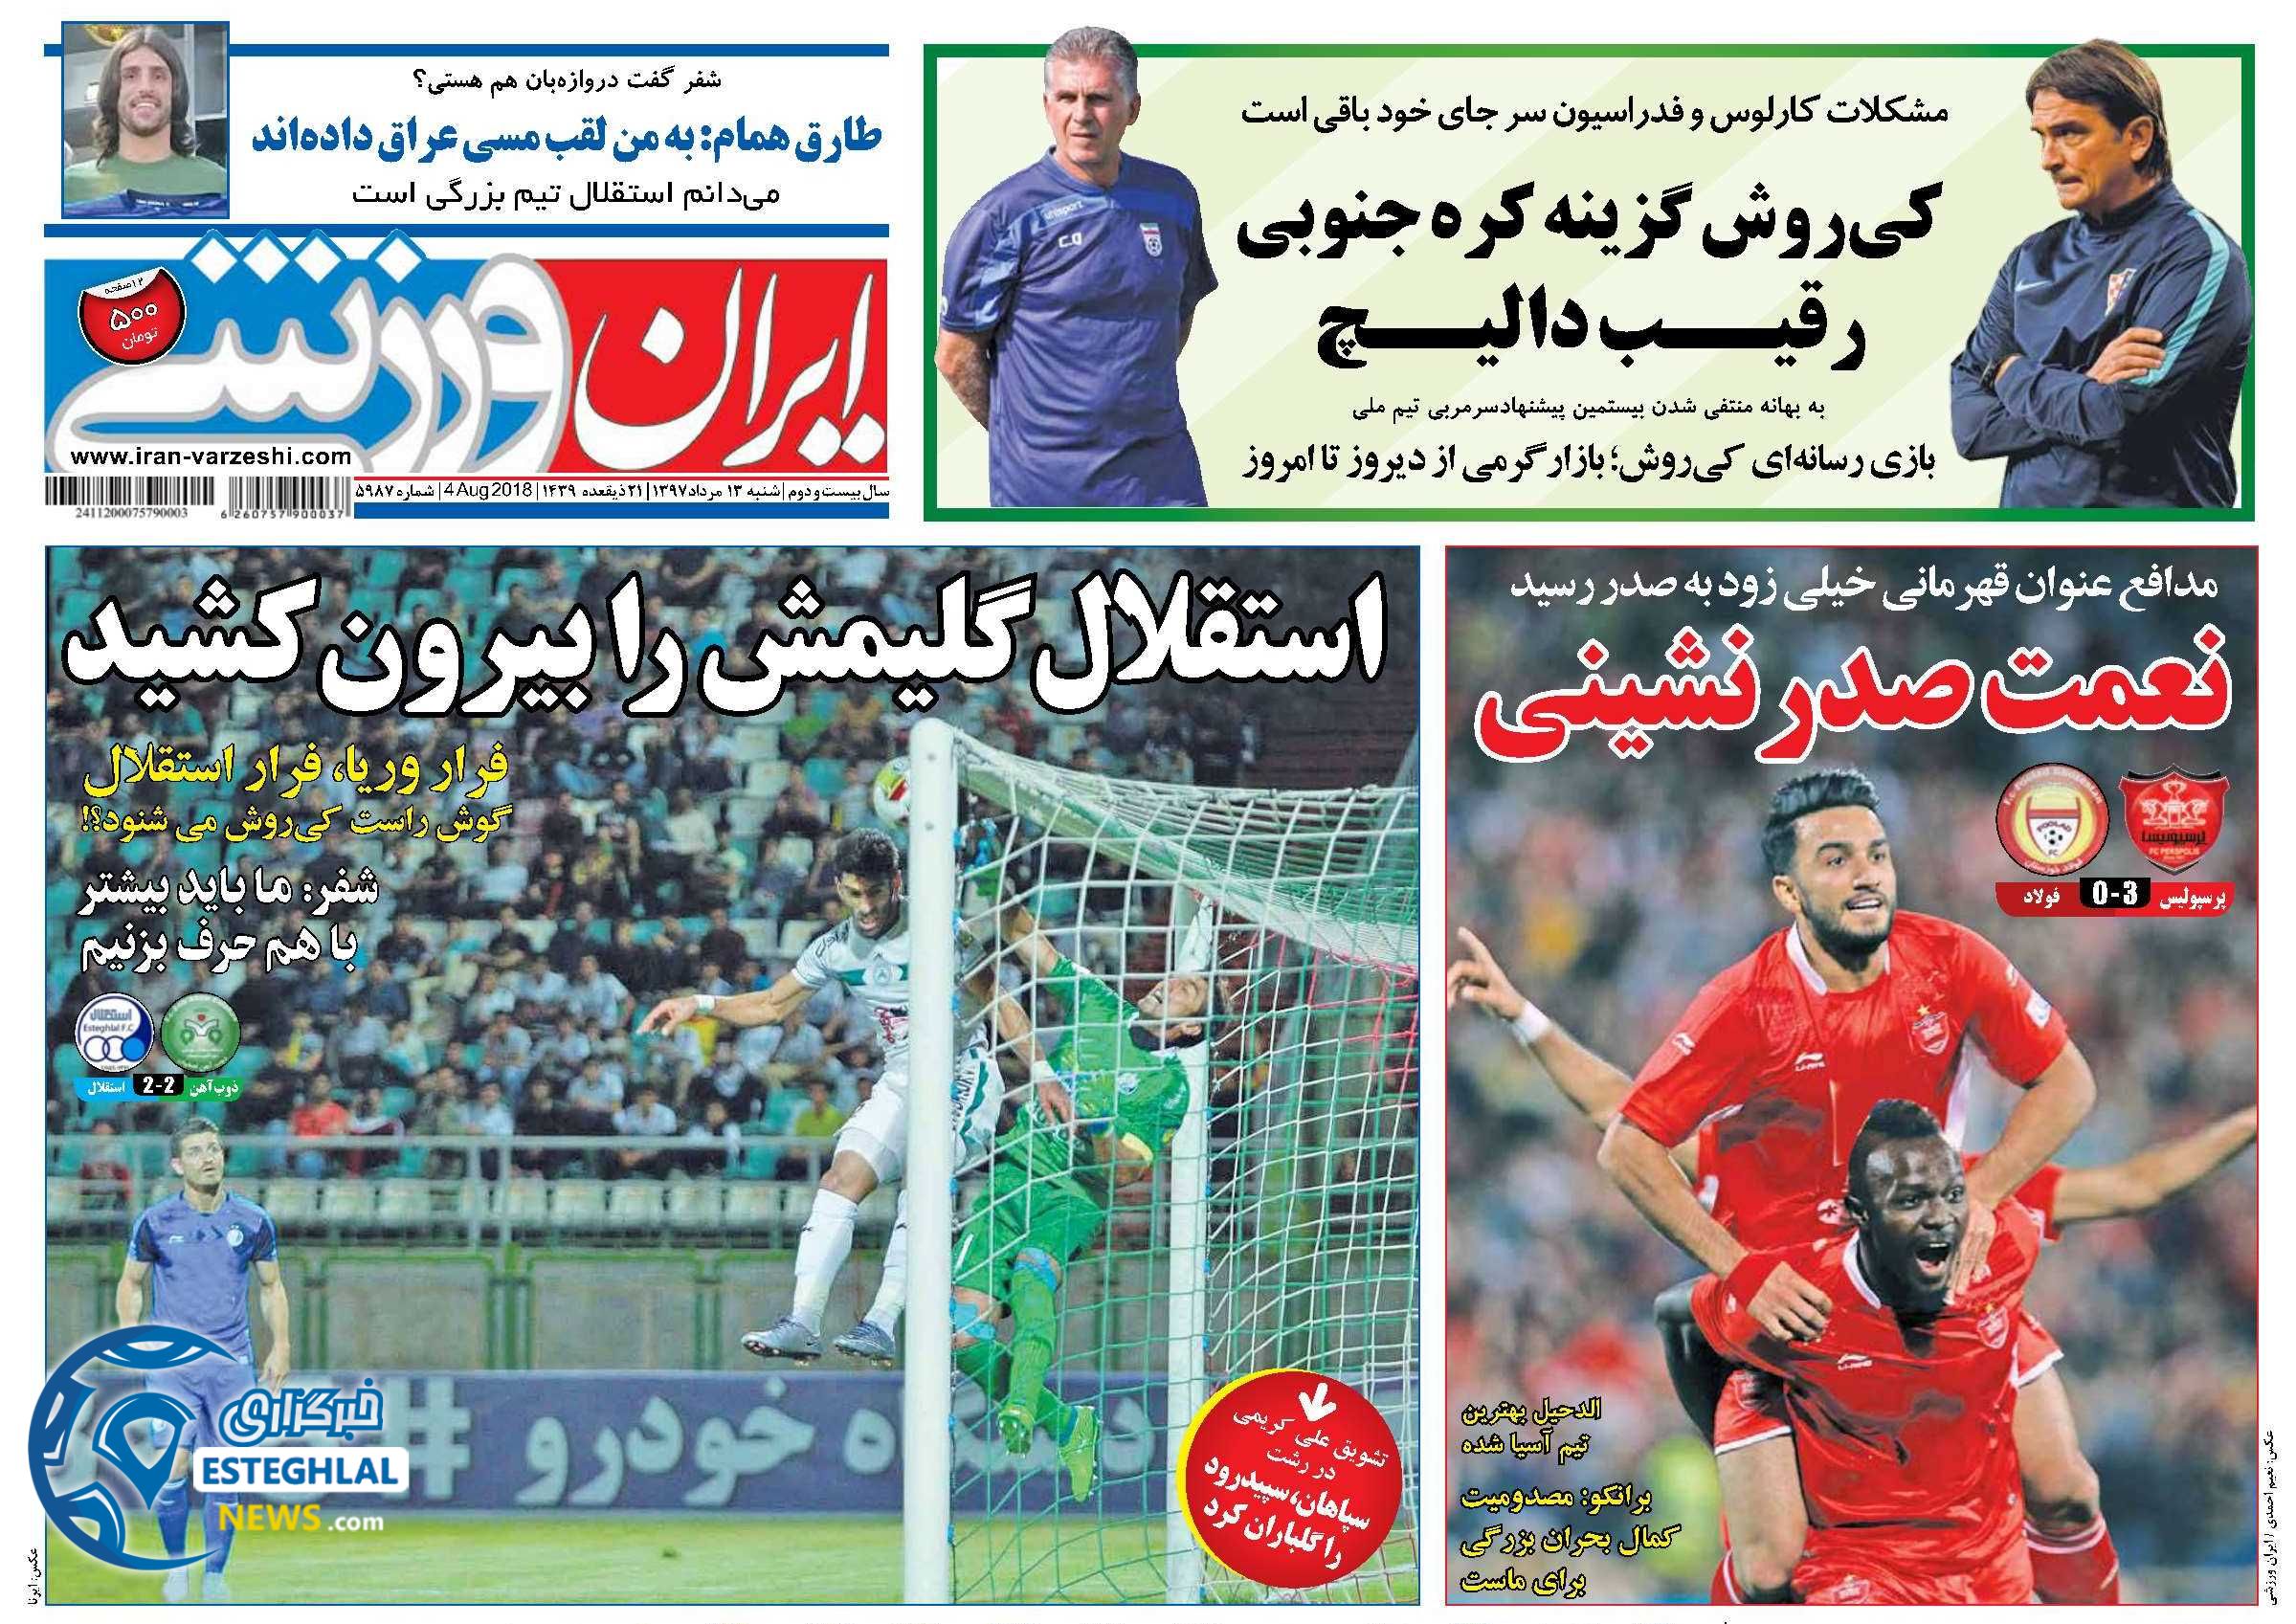 روزنامه ایران ورزشی شنبه 13 مرداد 1397 